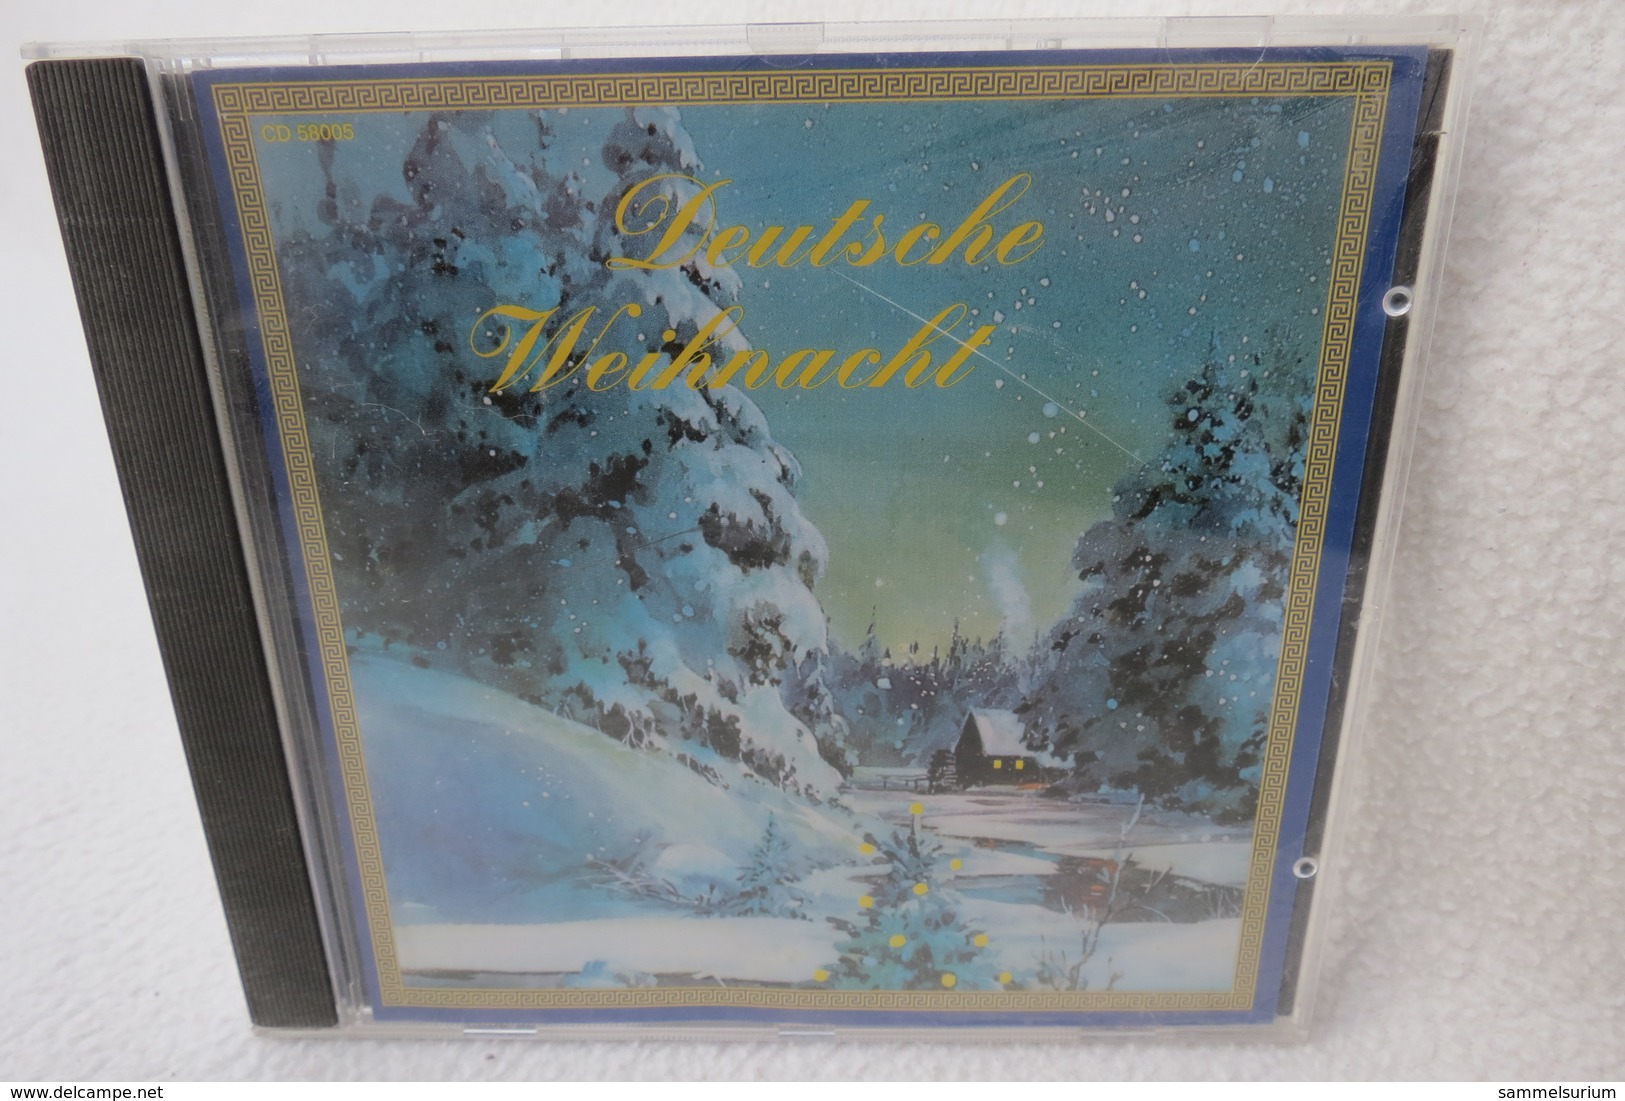 CD "Deutsche Weihnacht 2" - Weihnachtslieder